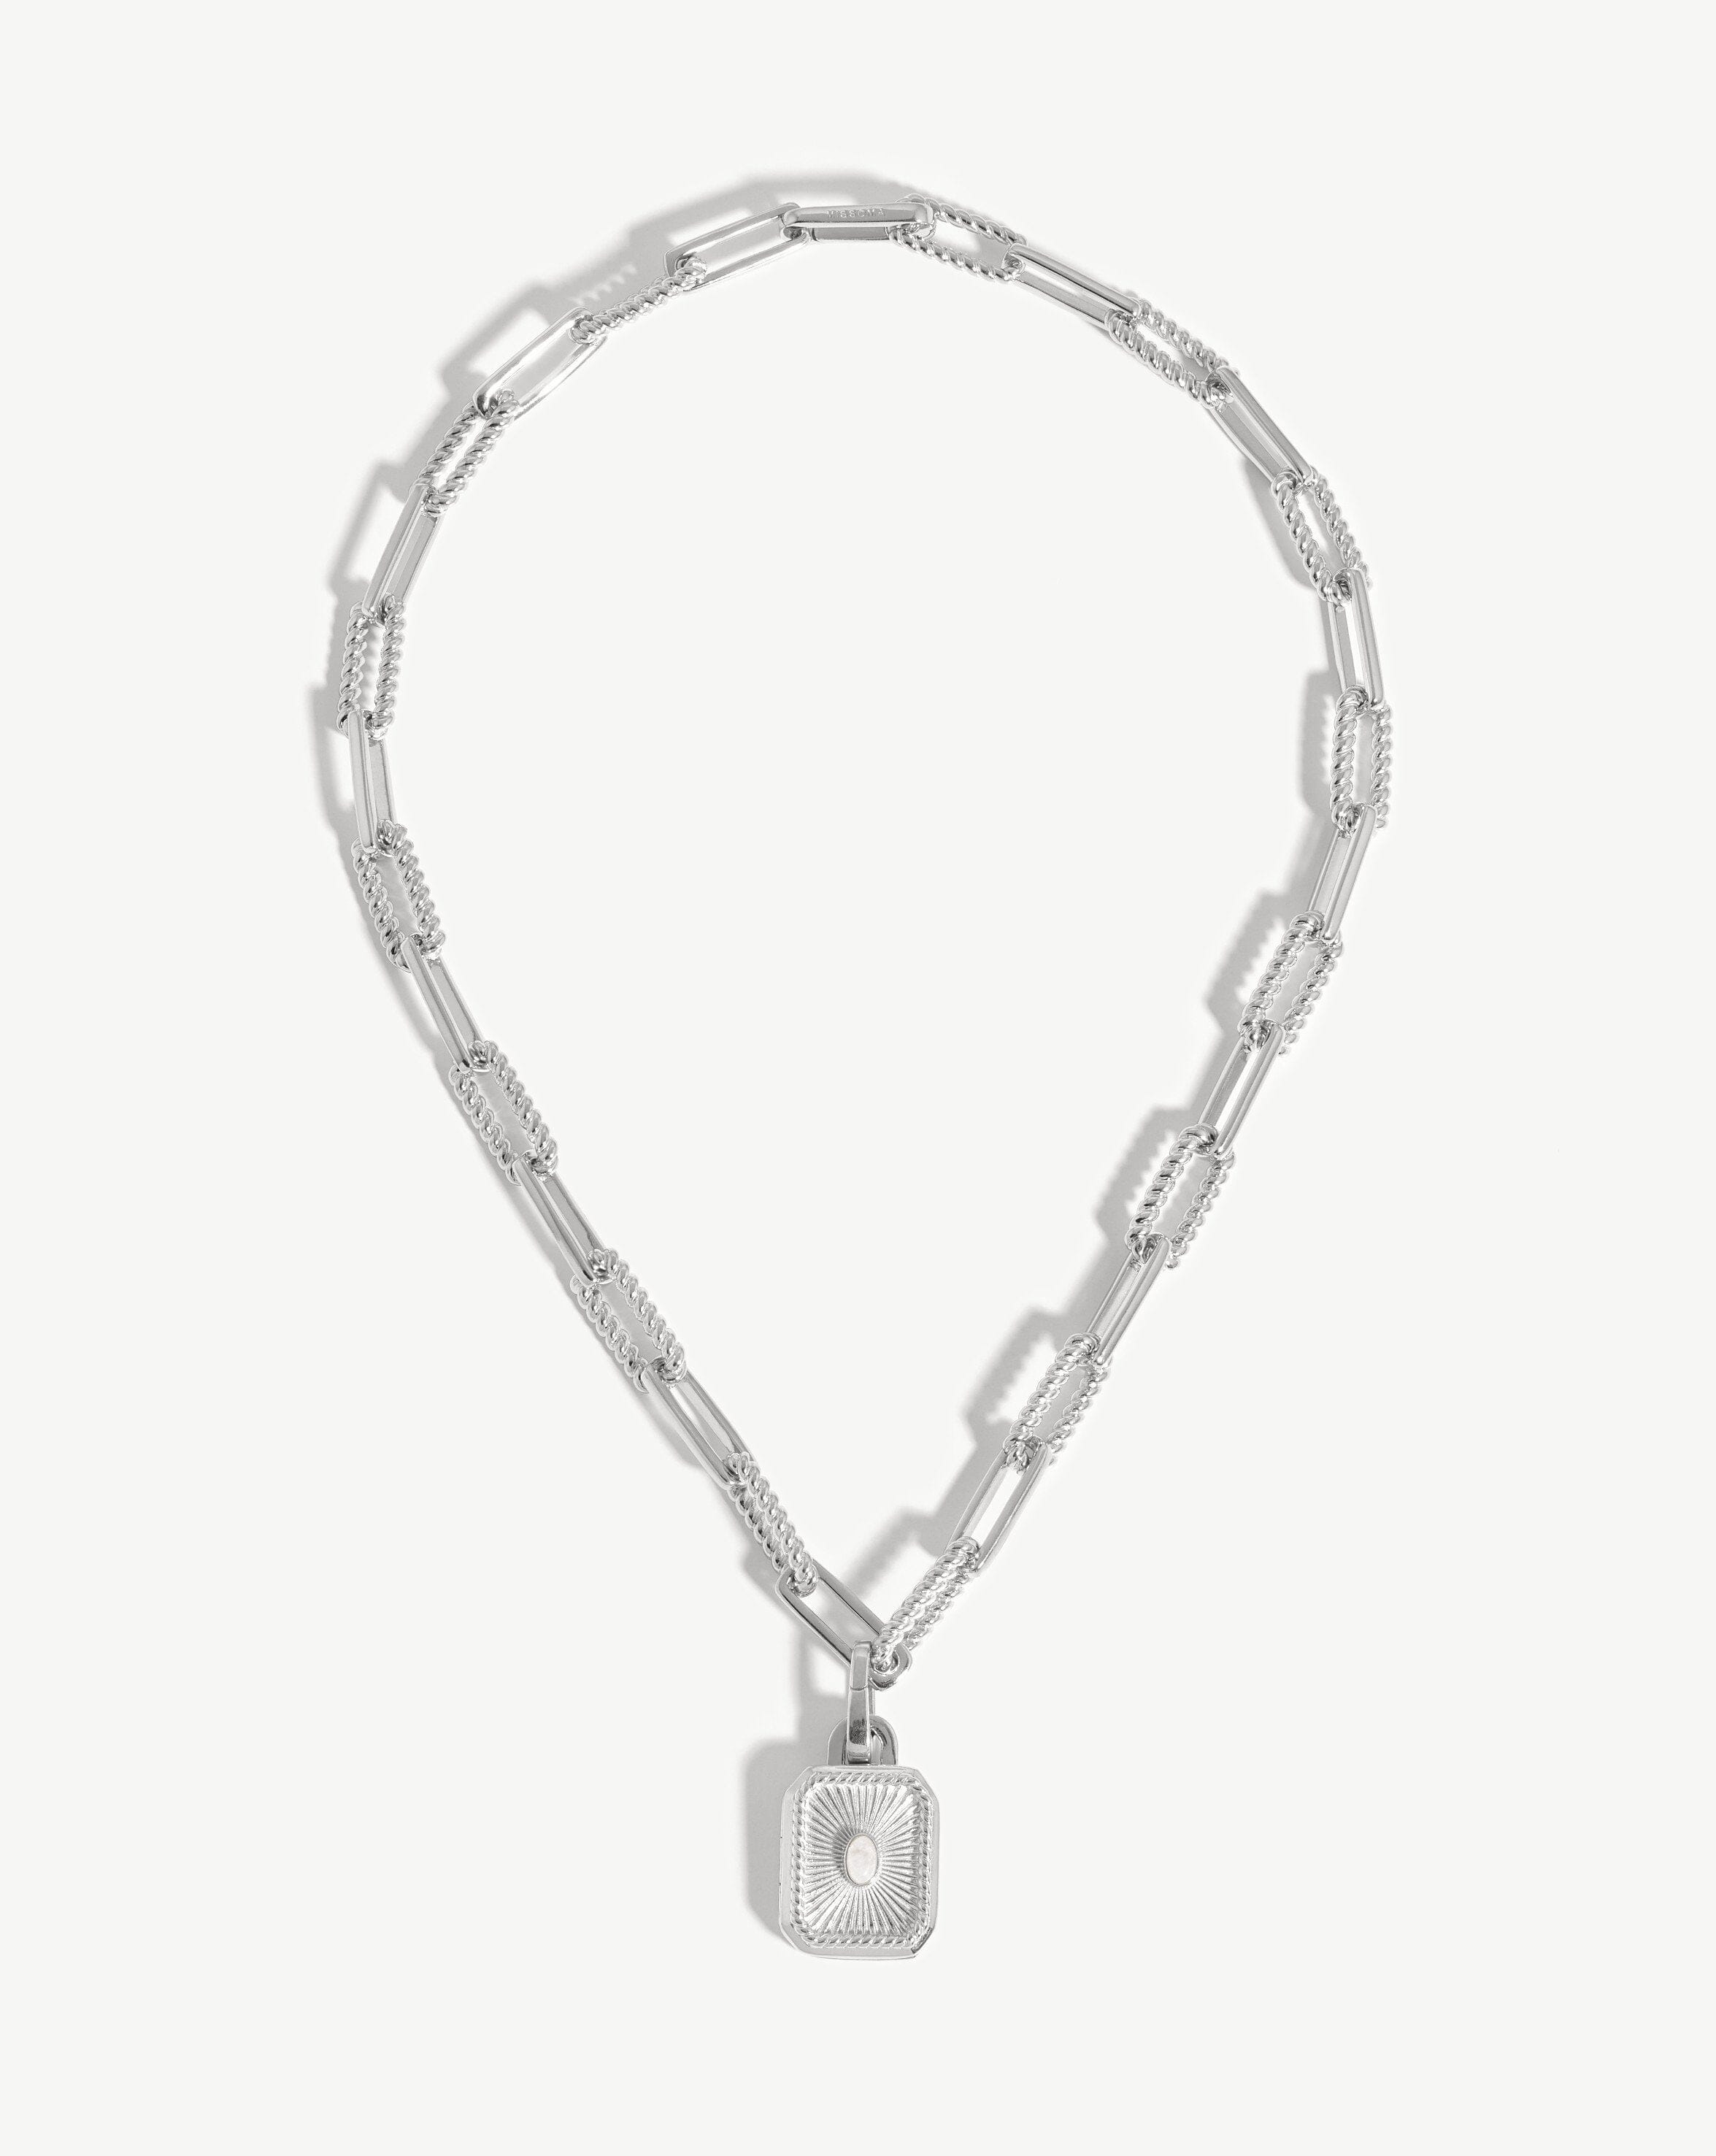 Louis Vuitton Roman Holidays Choker Necklace - Brass Choker